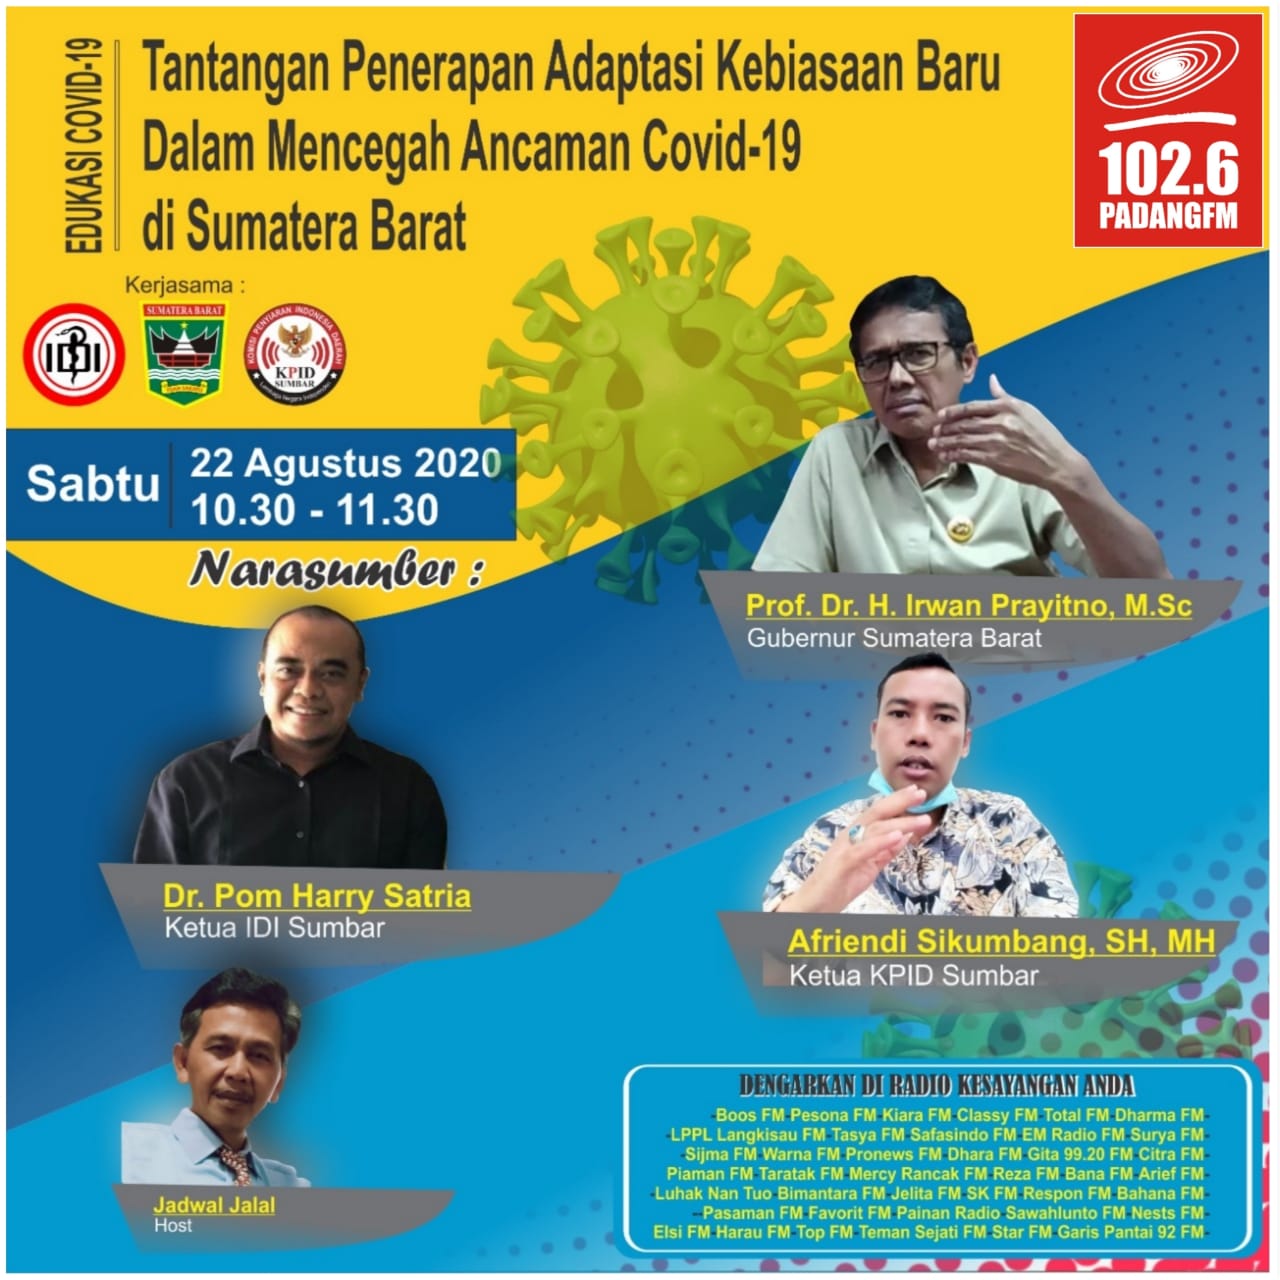 Talkshow Edukasi Covid-19 : Tantangan Penerapan Adaptasi Kebiasaan Baru Dalam Mencegah Ancaman Covid-19 di Sumatera Barat